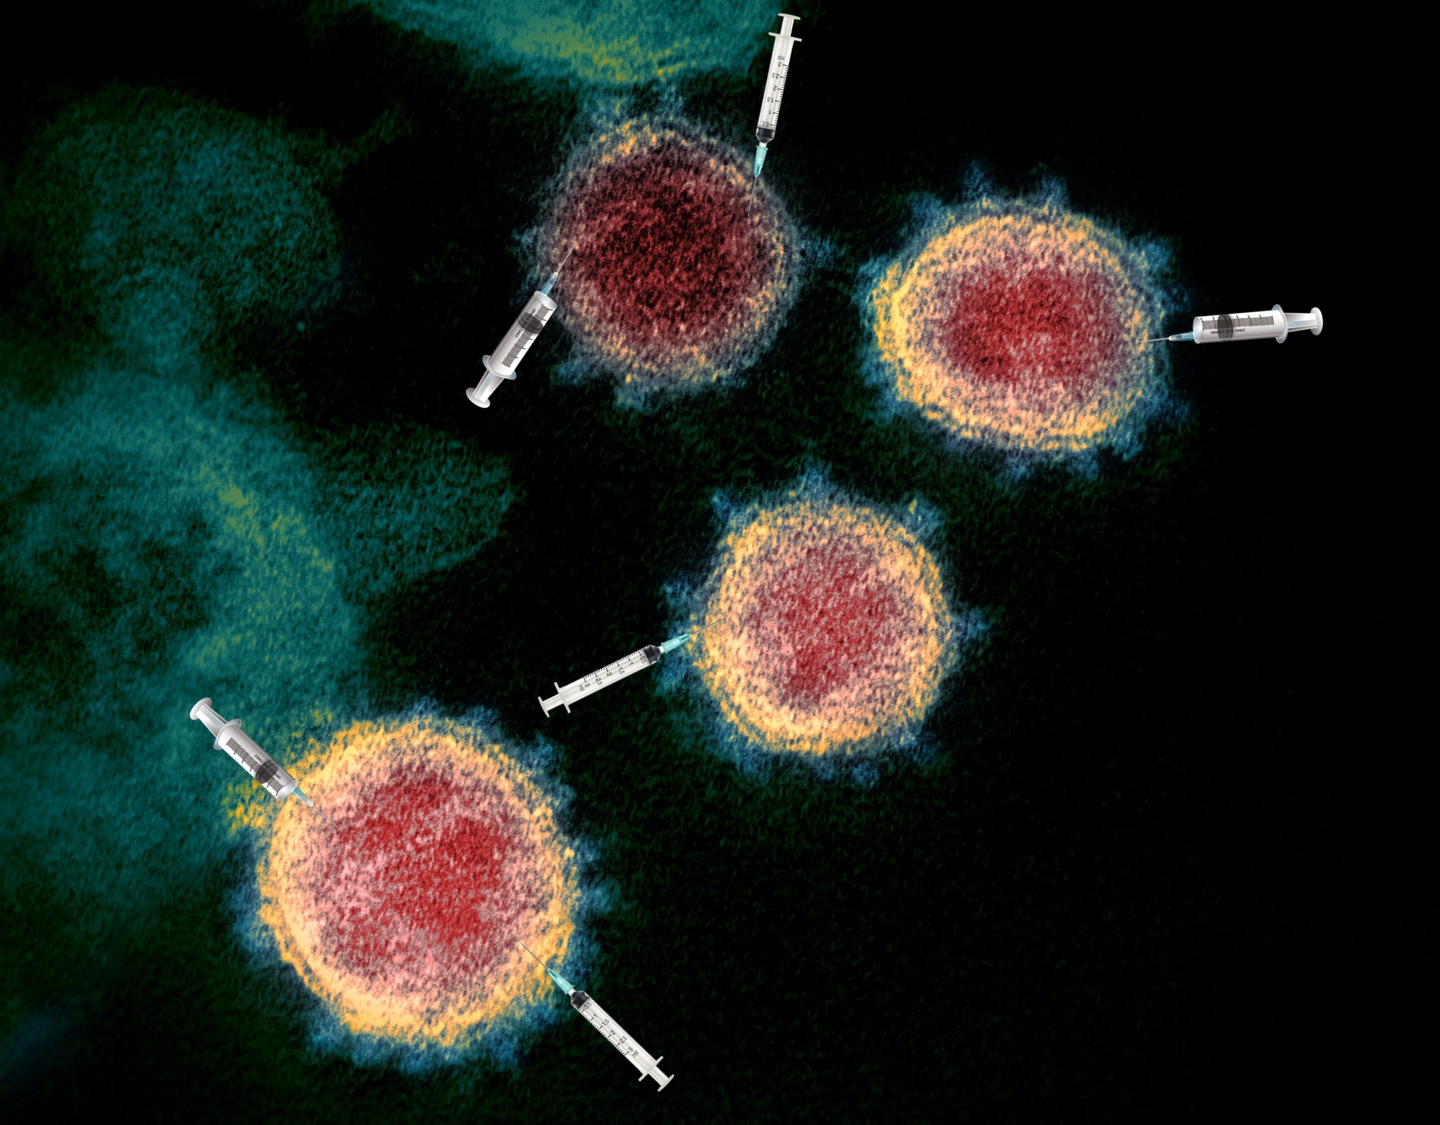 vacunas-sars cov 2-coronavirus-covid 19-virus-pandemia-ADN-ADN recombinante-vacuna de ARNm-ARN mensajero-mutaciones-sistema inmune-sistema inmunitario-inflamacion-linfocitos-linfocito T-linfocito B-macrofago-antigeno-inmunidad-memoria